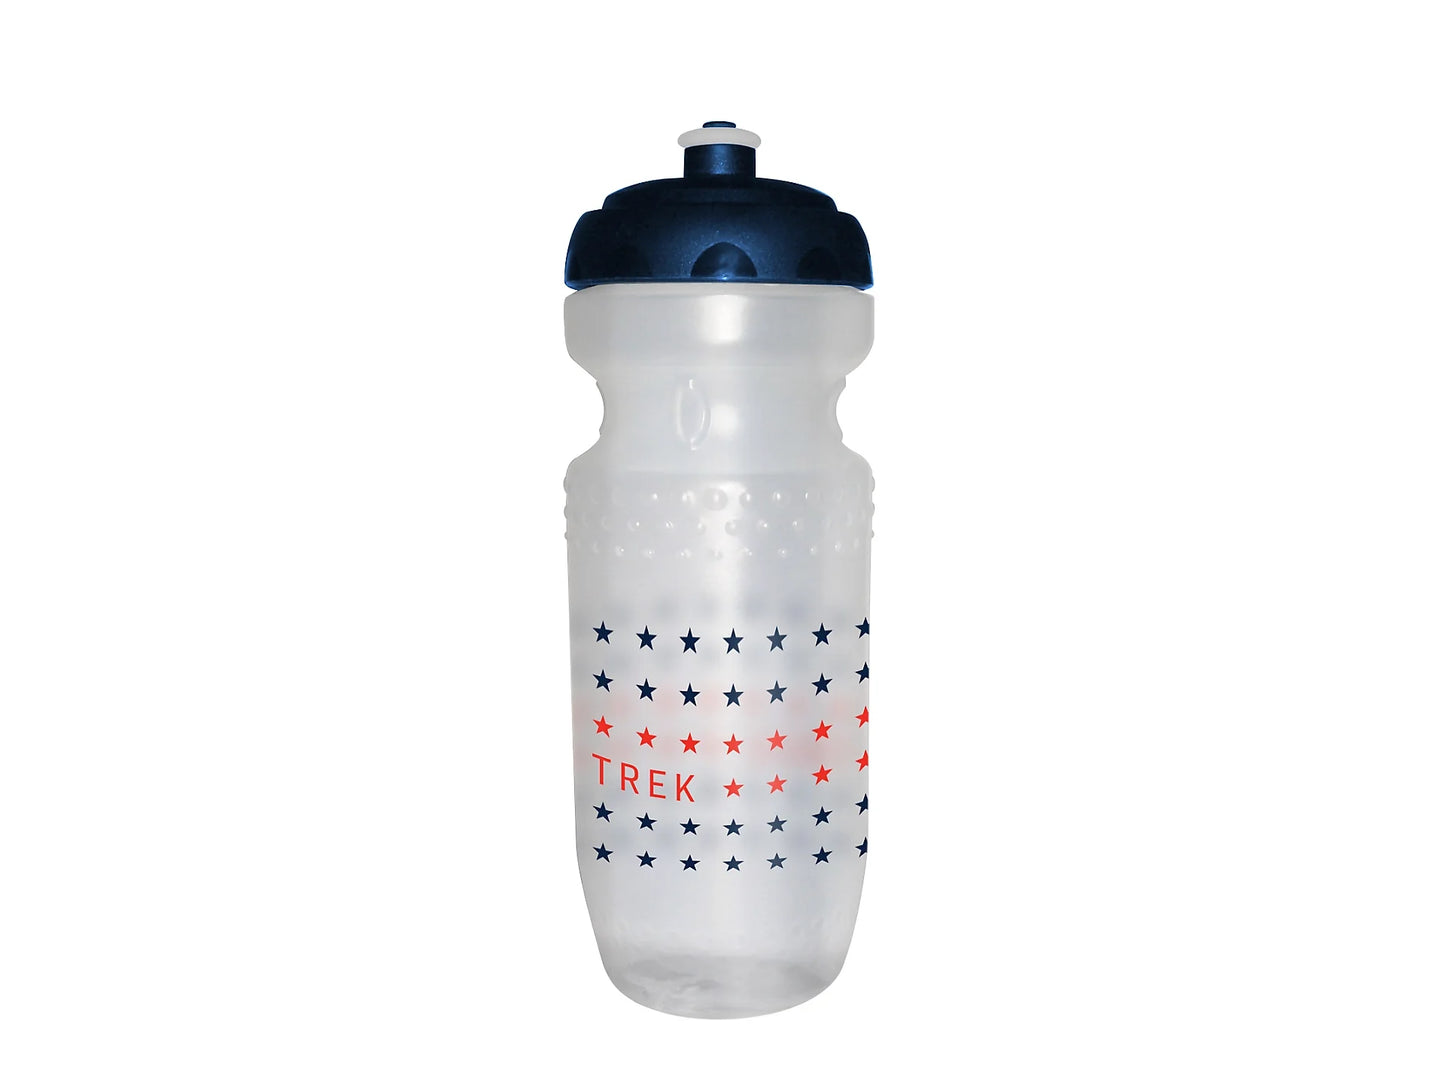 Trek Max Stars water bottle